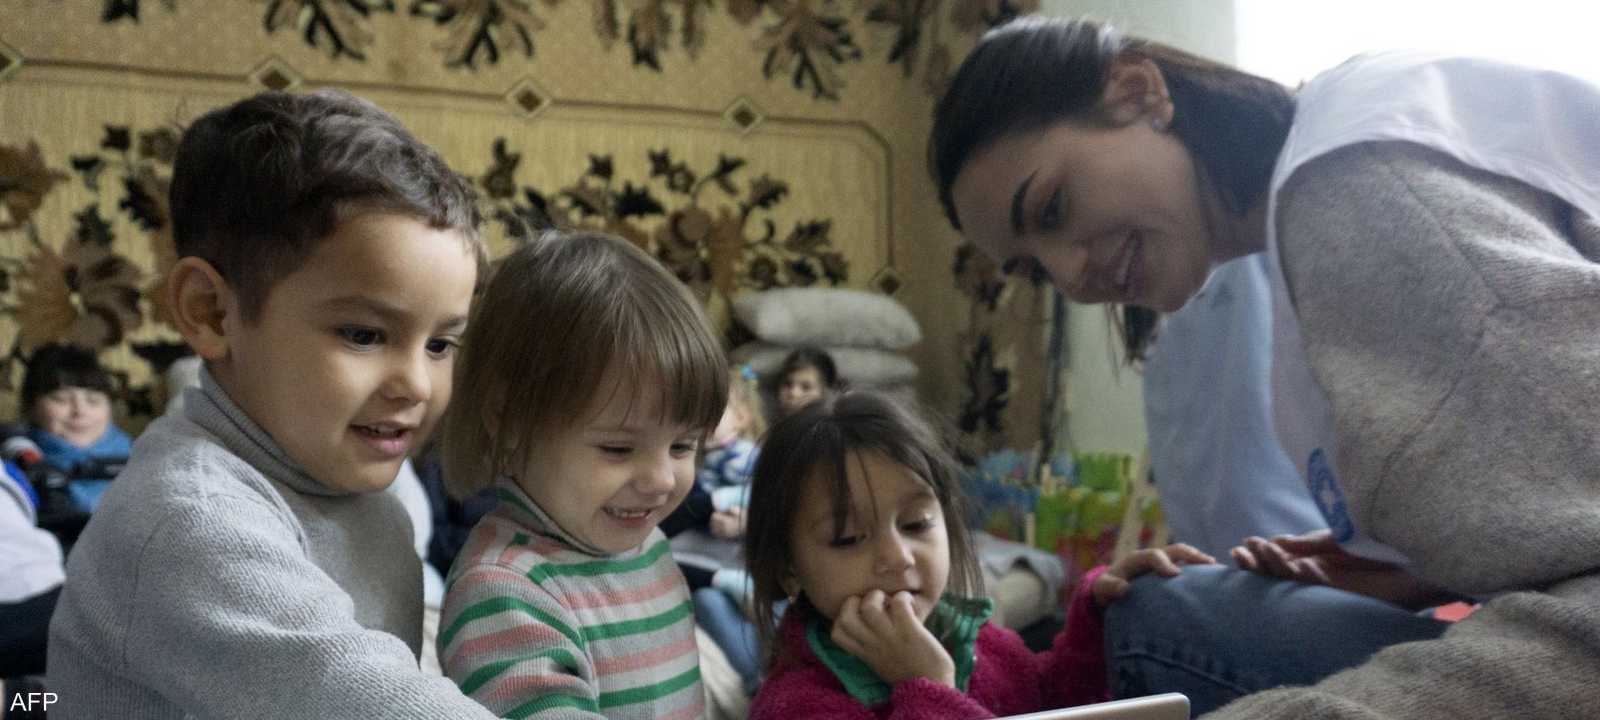 القضية تخص "خطفا مزعوما" لأطفال أوكرانيين